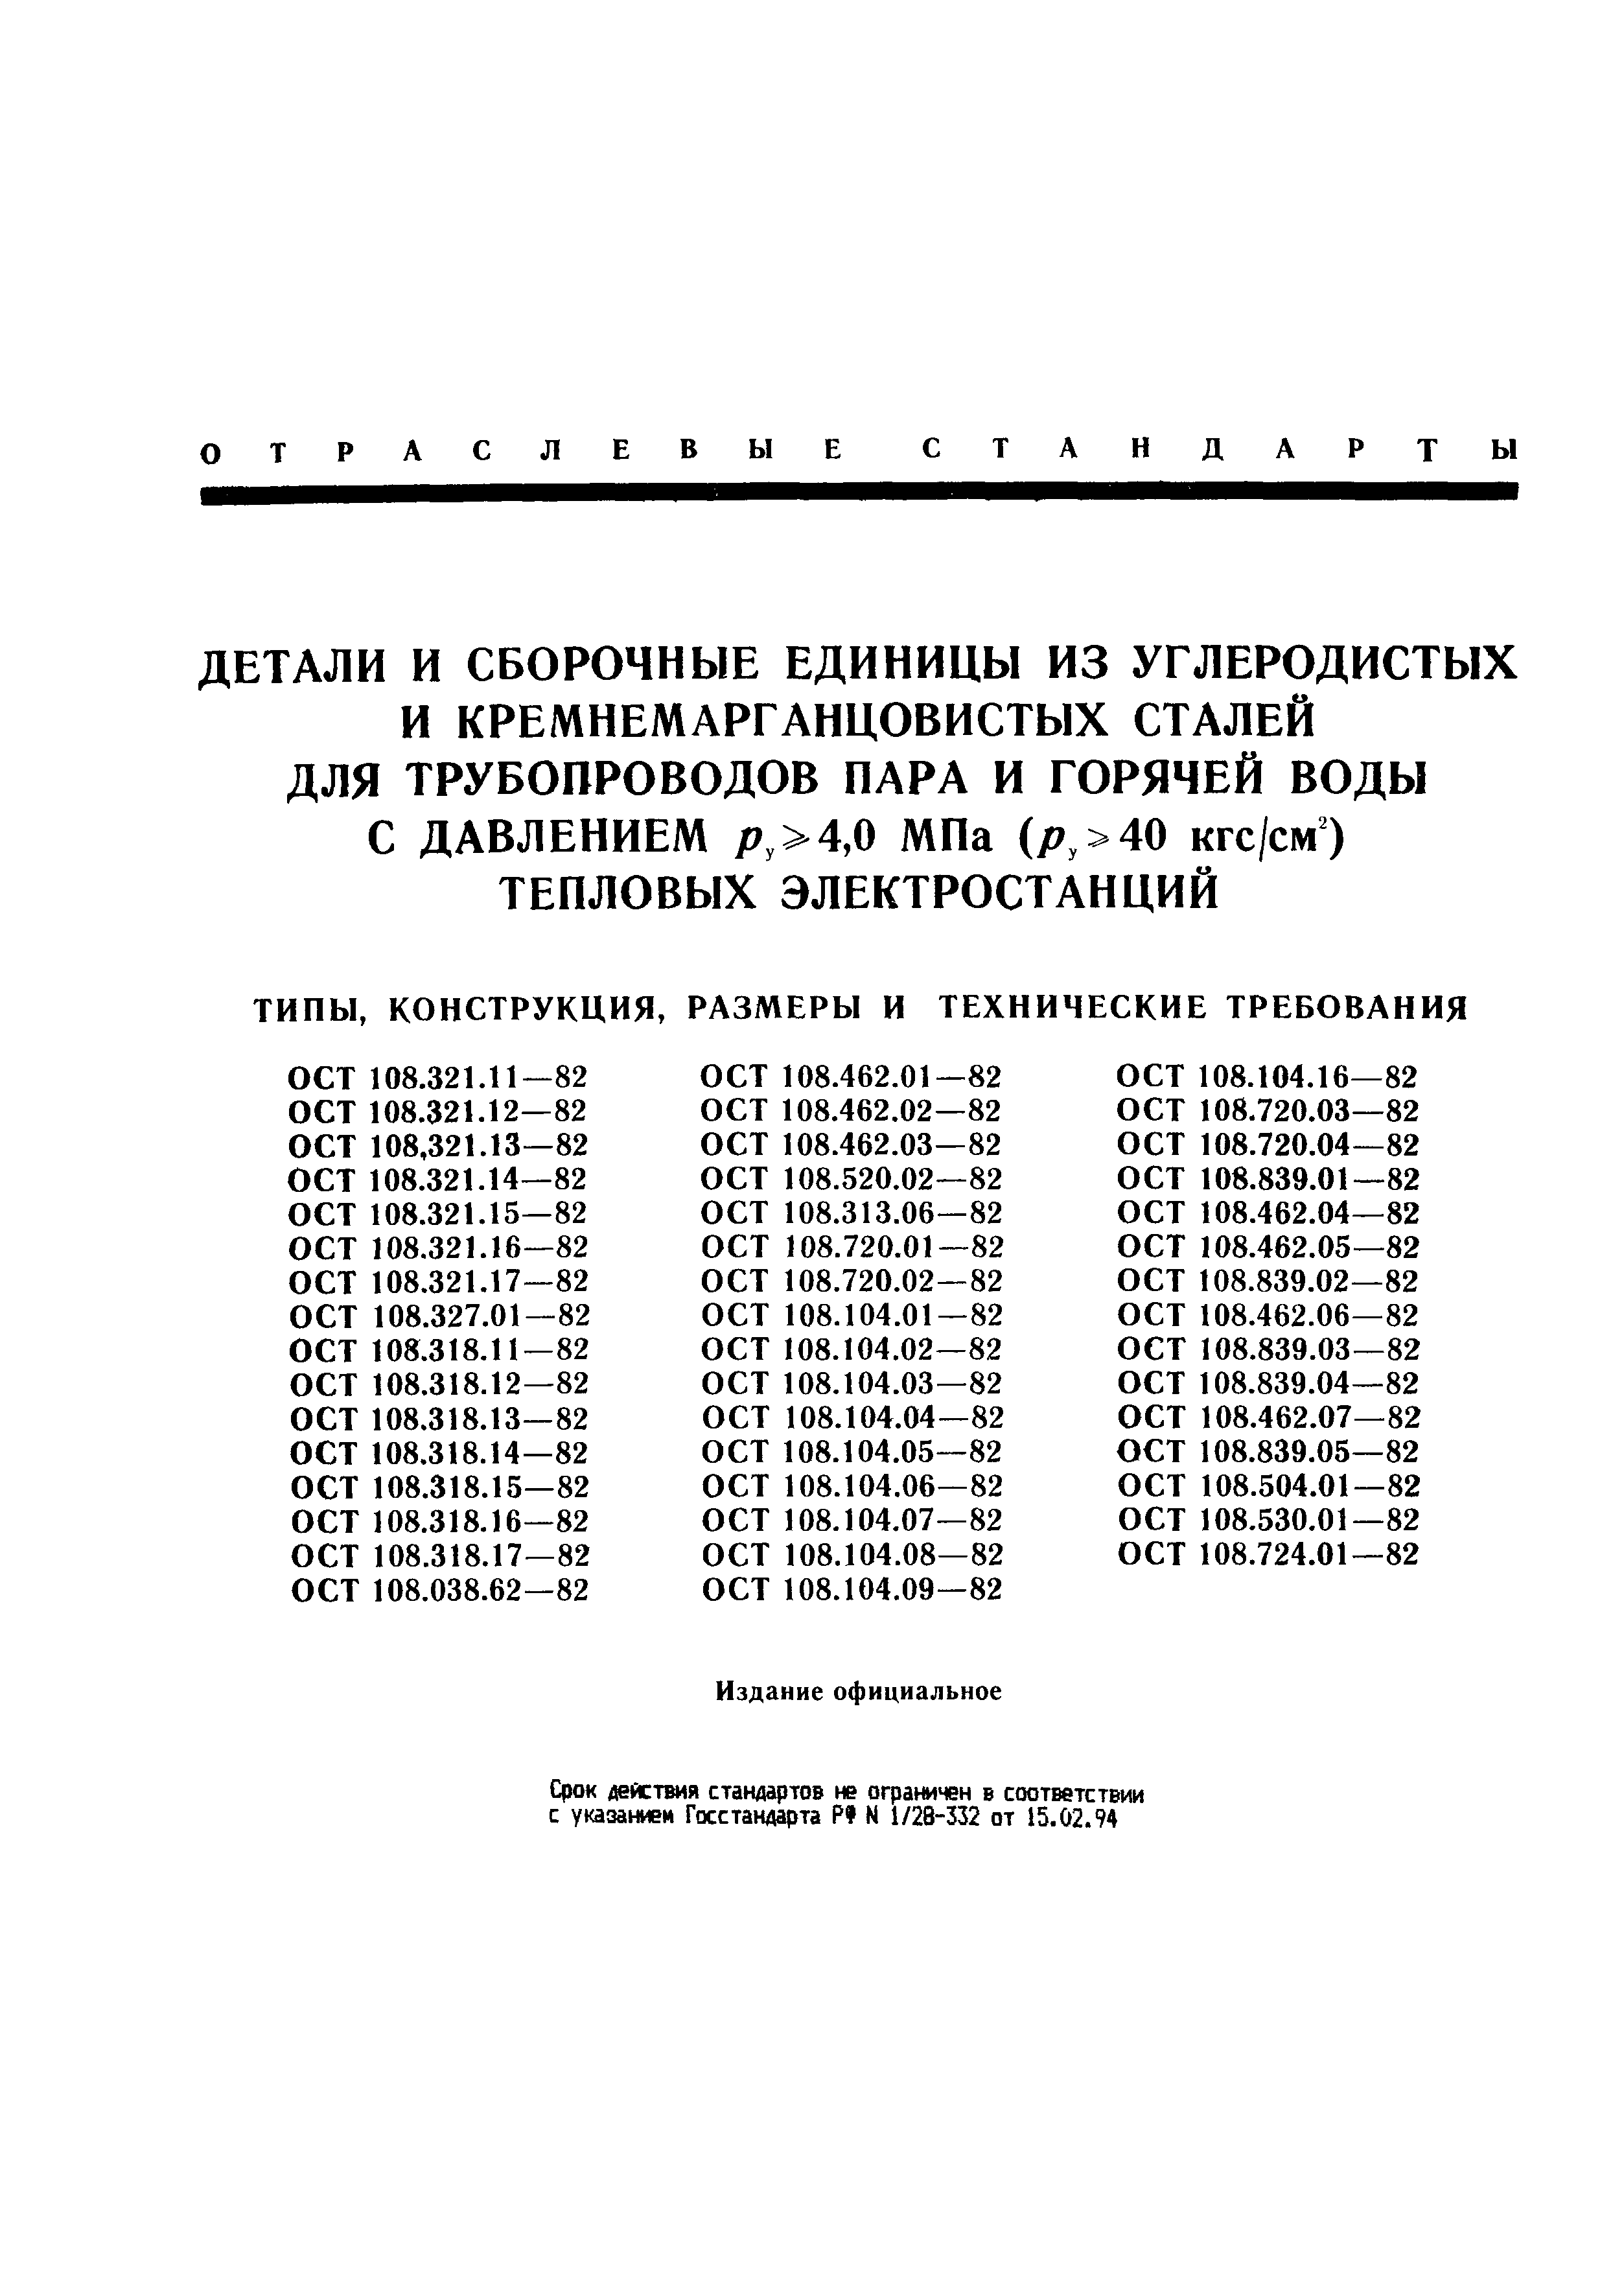 ОСТ 108.104.16-82